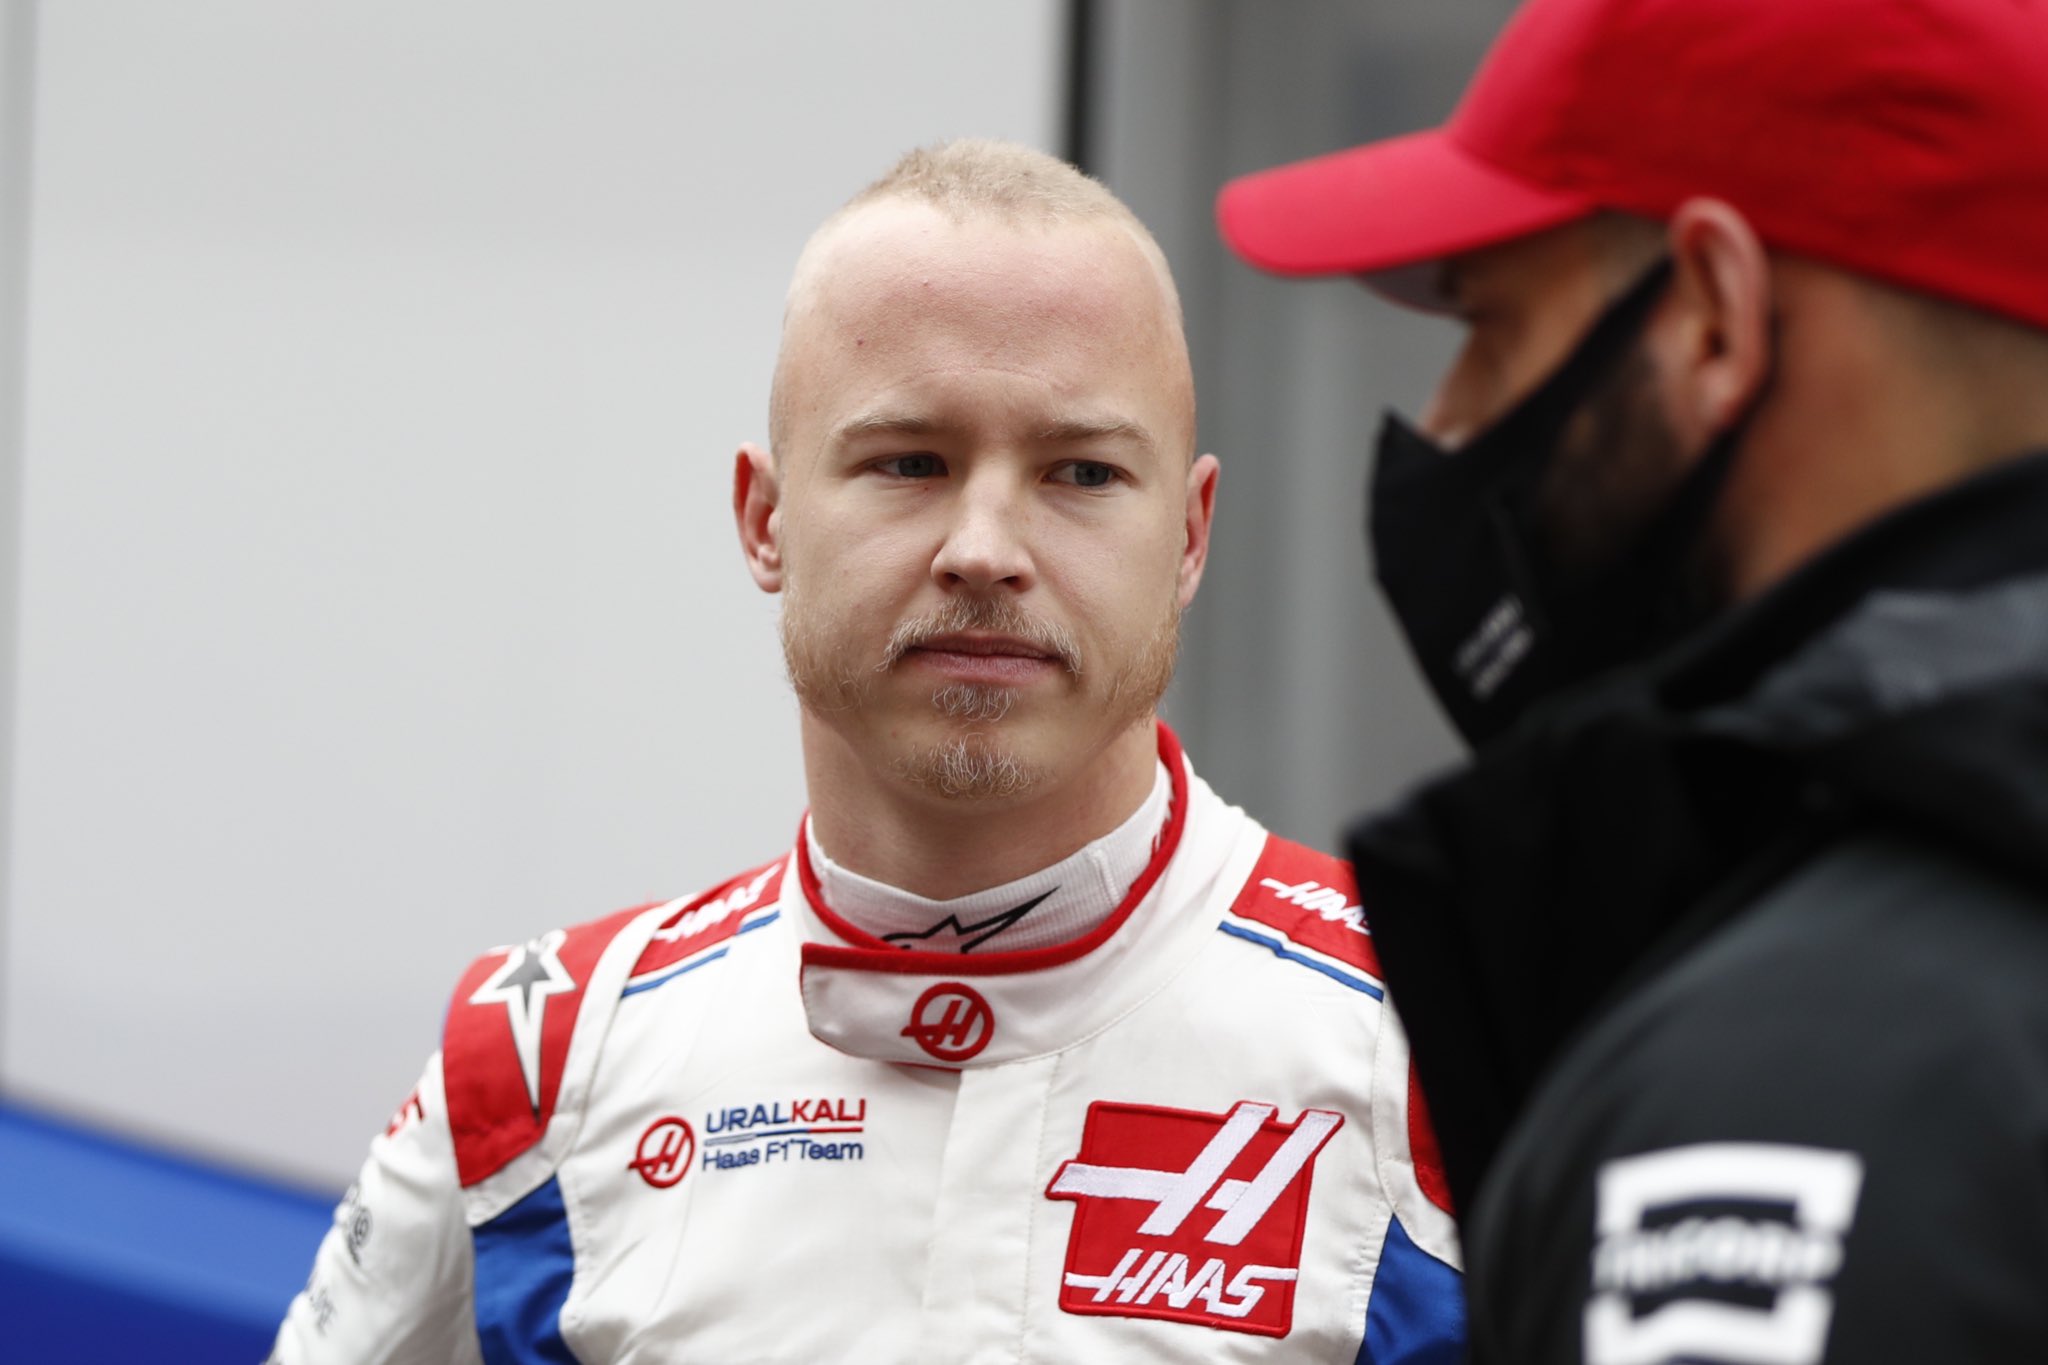 La escudería Haas rescinde el contrato del ruso Mazepin y el de su patrocinador principal